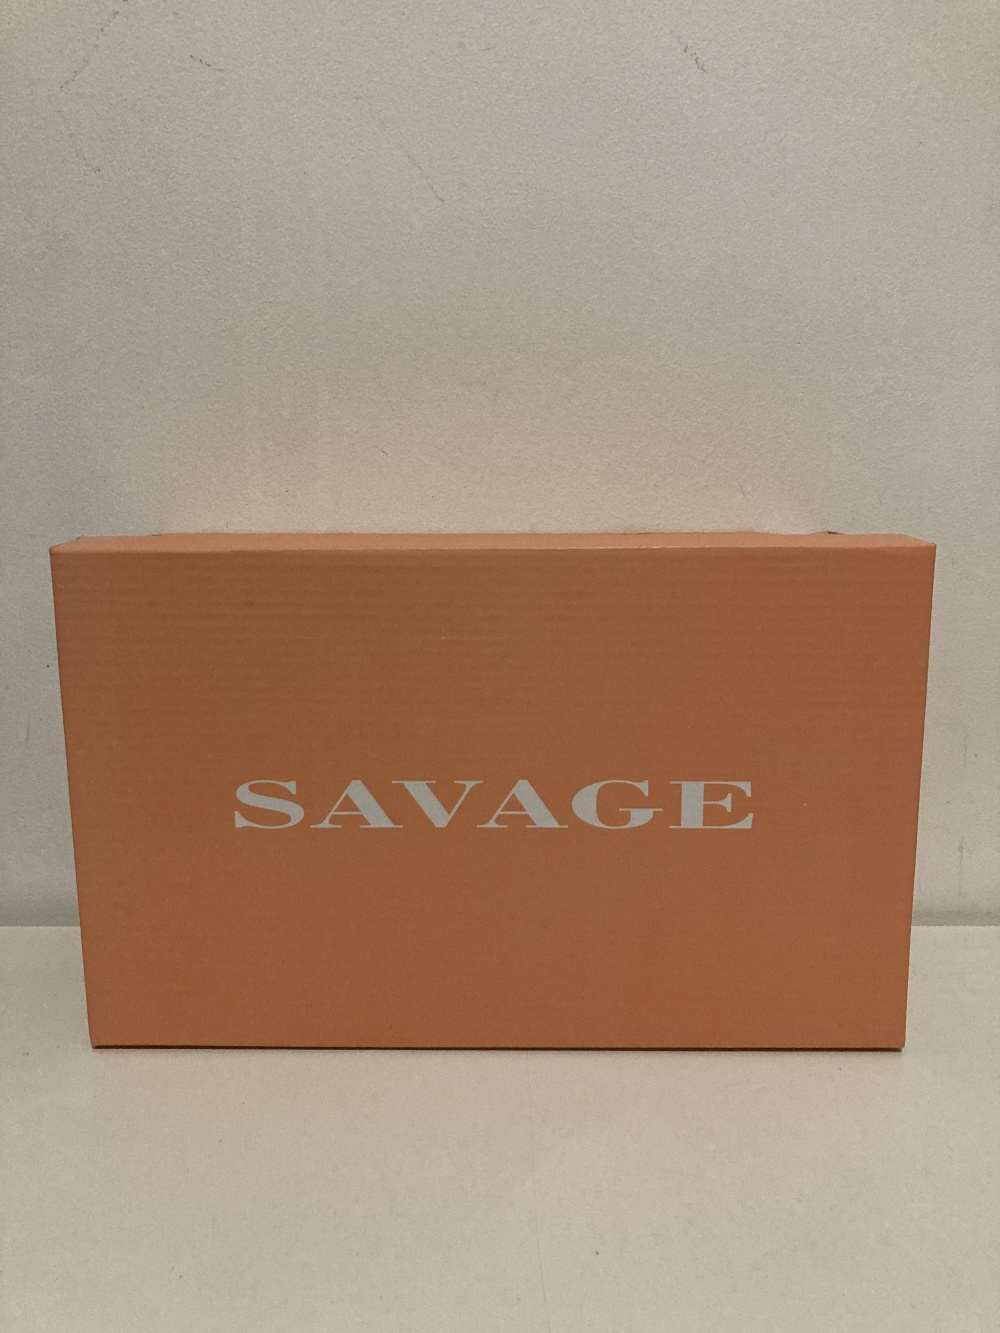 Сандалии “ Savage ”, 38-39 размер